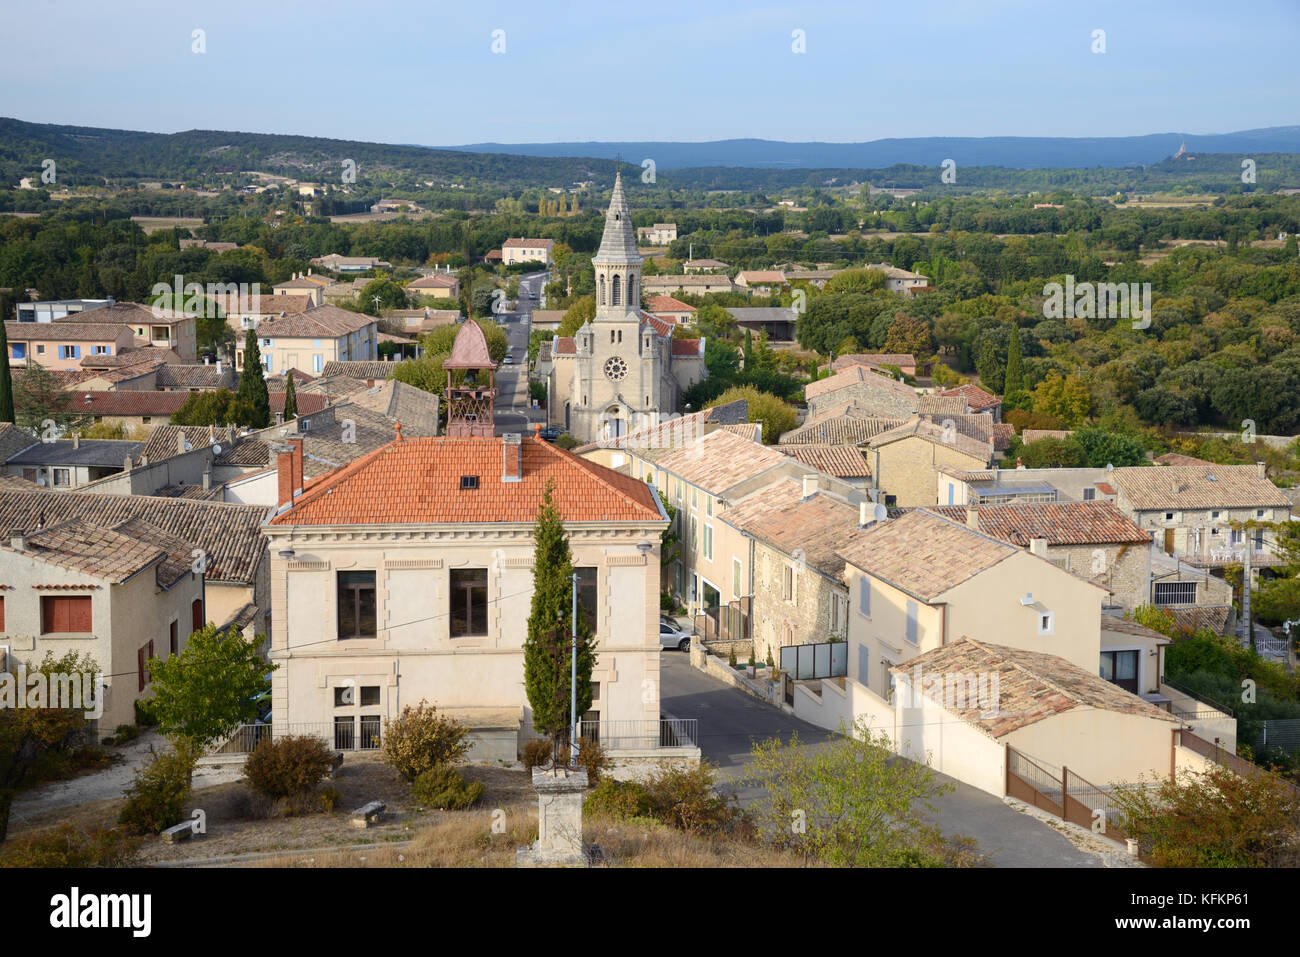 View over the Town Hall, Church and Village of Montségur-sur-Lauzon Drôme France Stock Photo